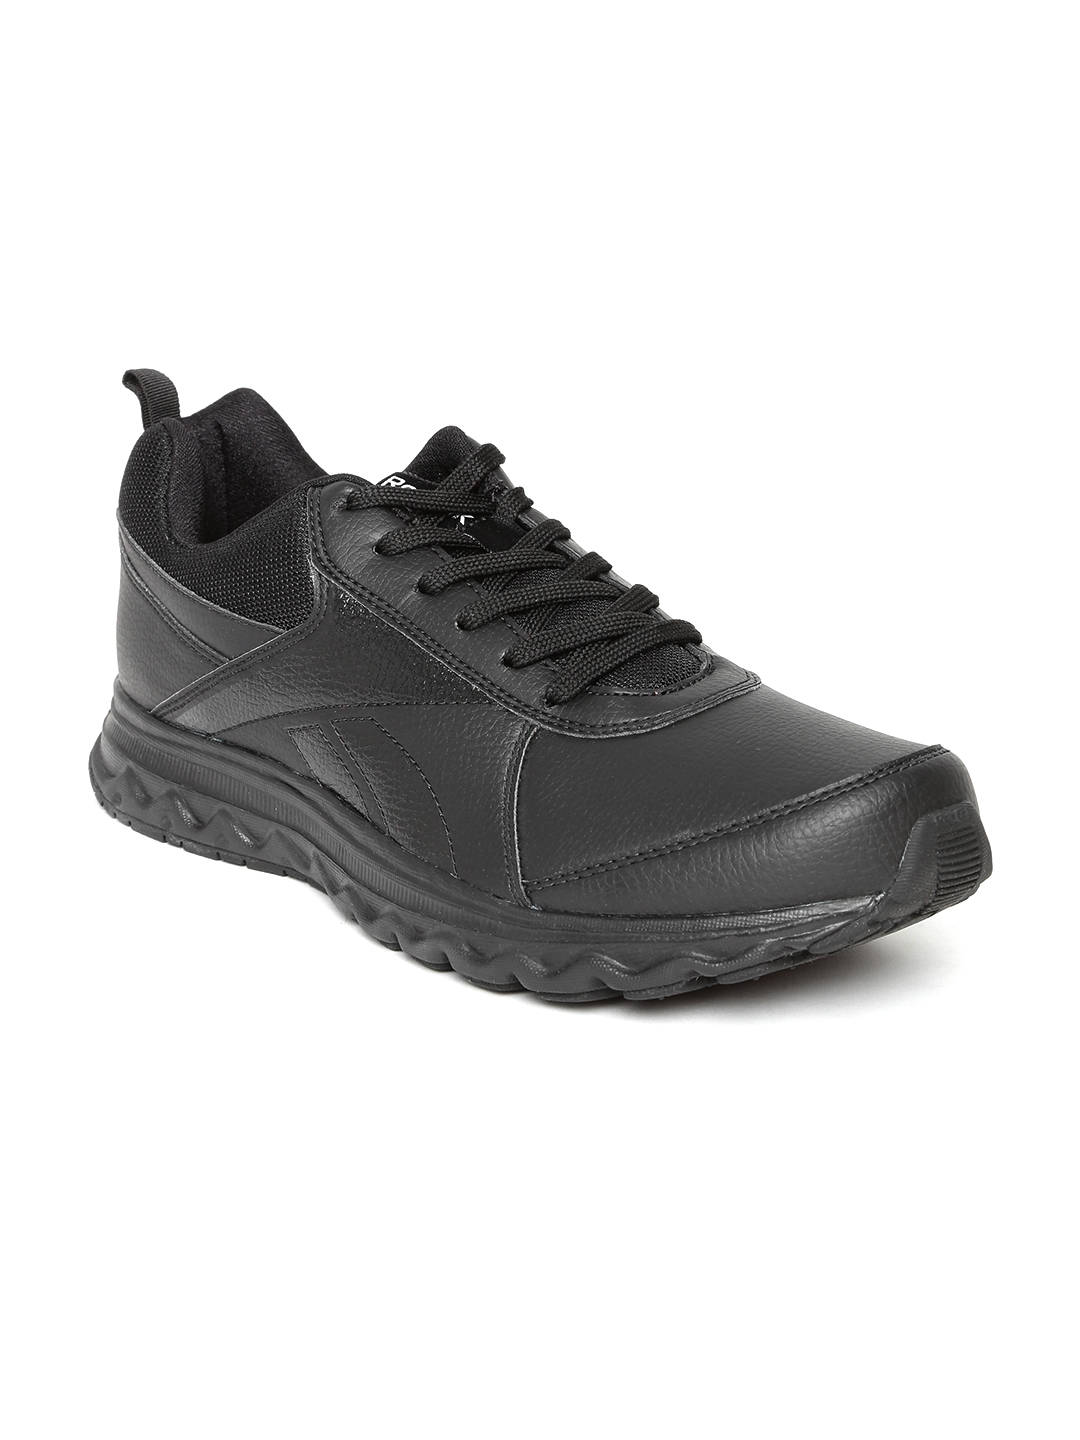 reebok school shoes online shopping